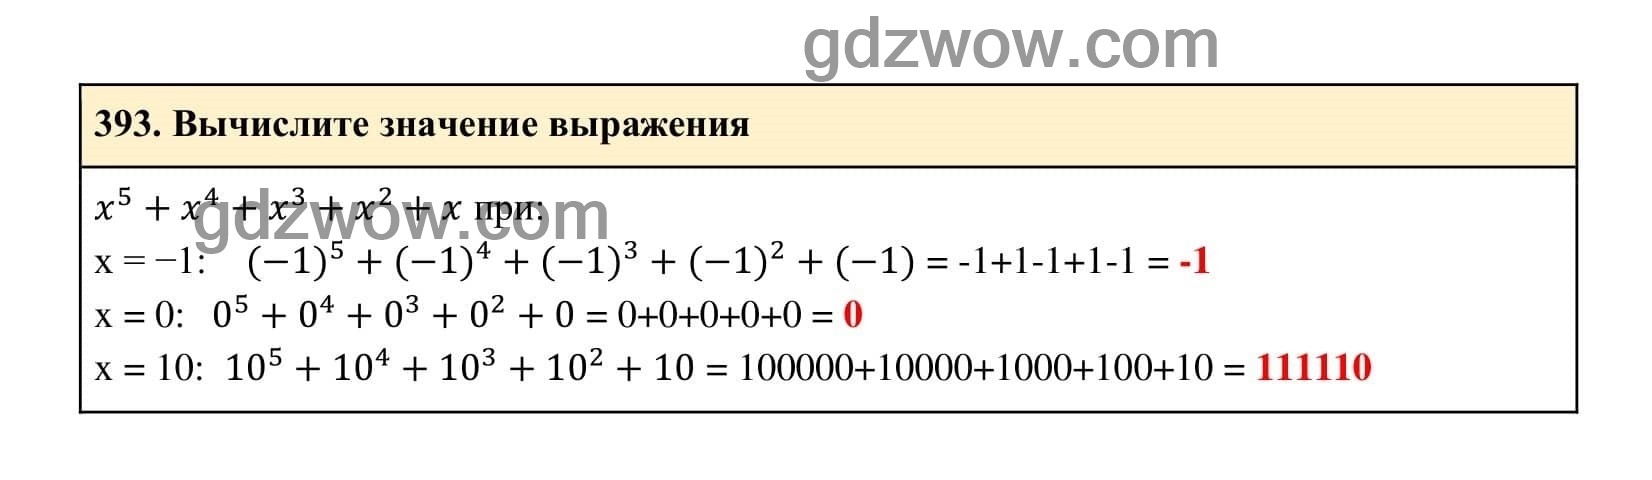 Упражнение 393 - ГДЗ по Алгебре 7 класс Учебник Макарычев (решебник) - GDZwow